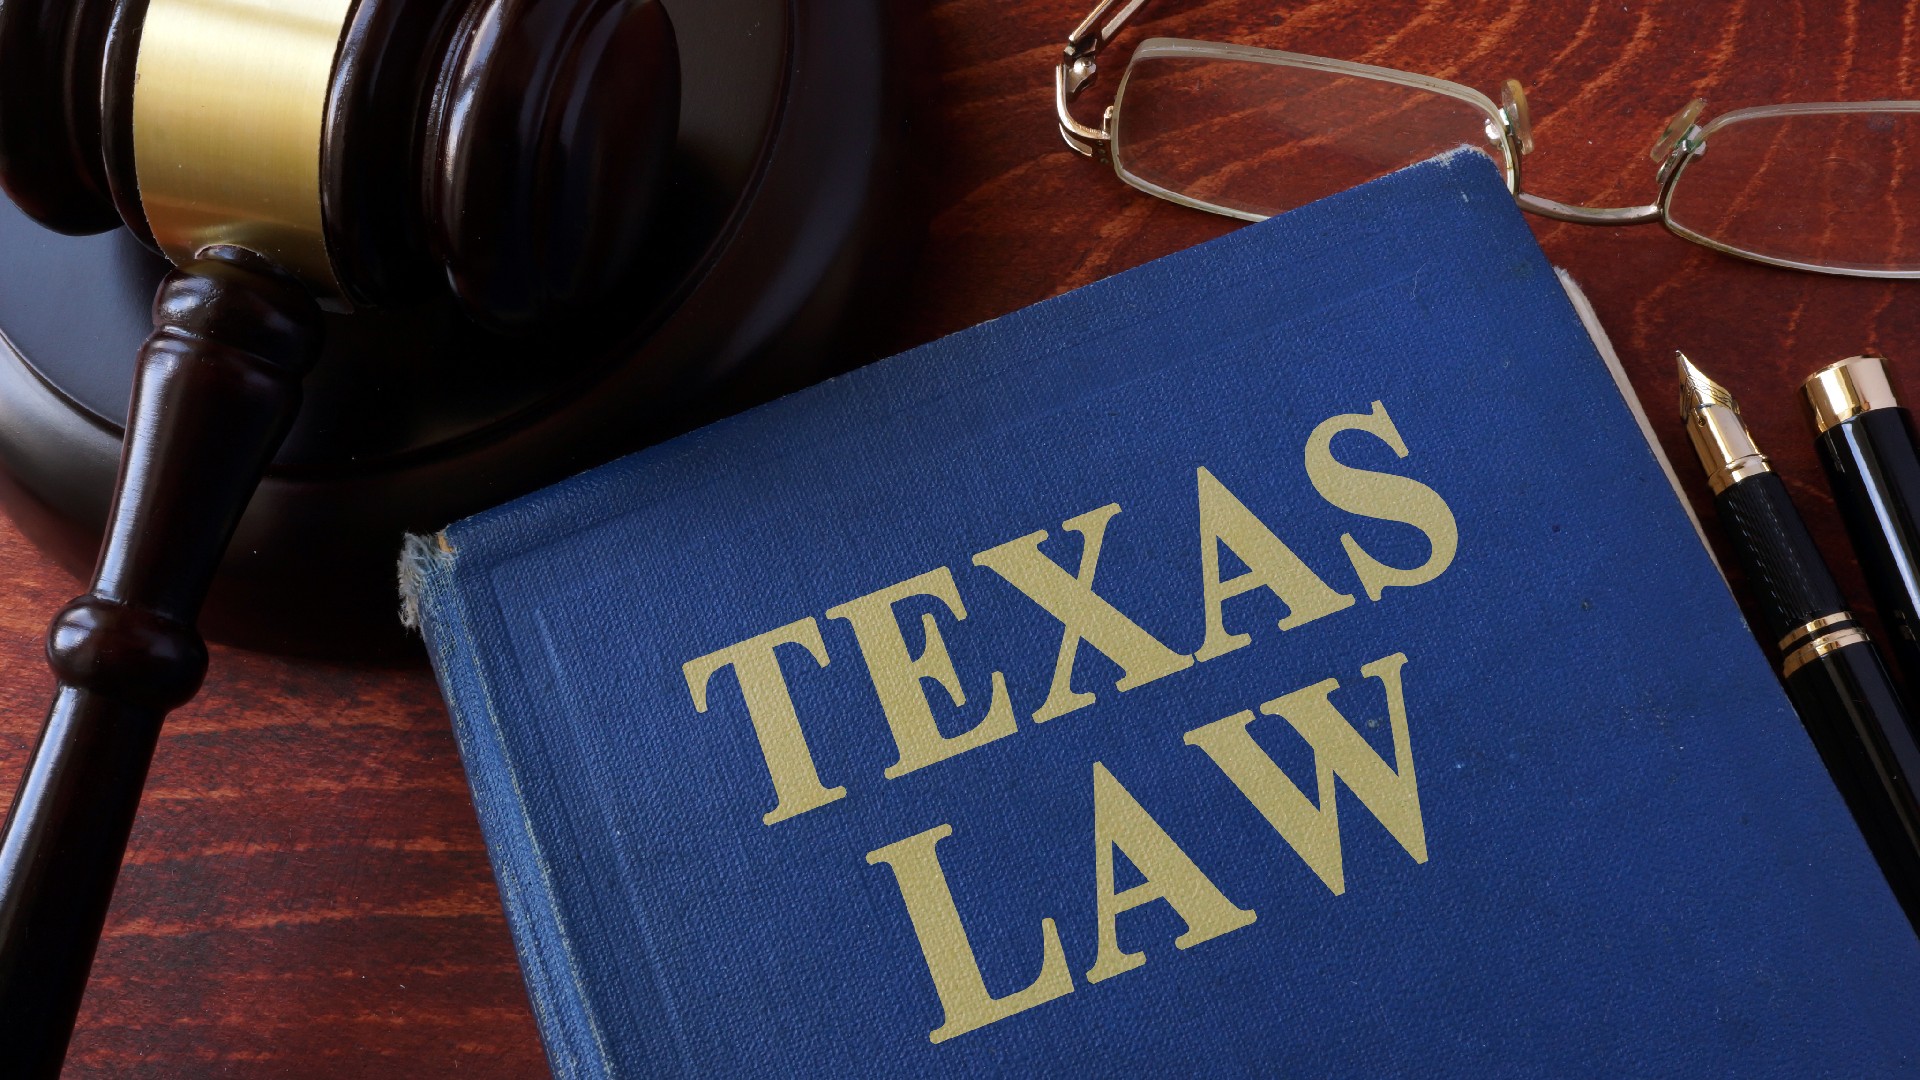 A Texas law book